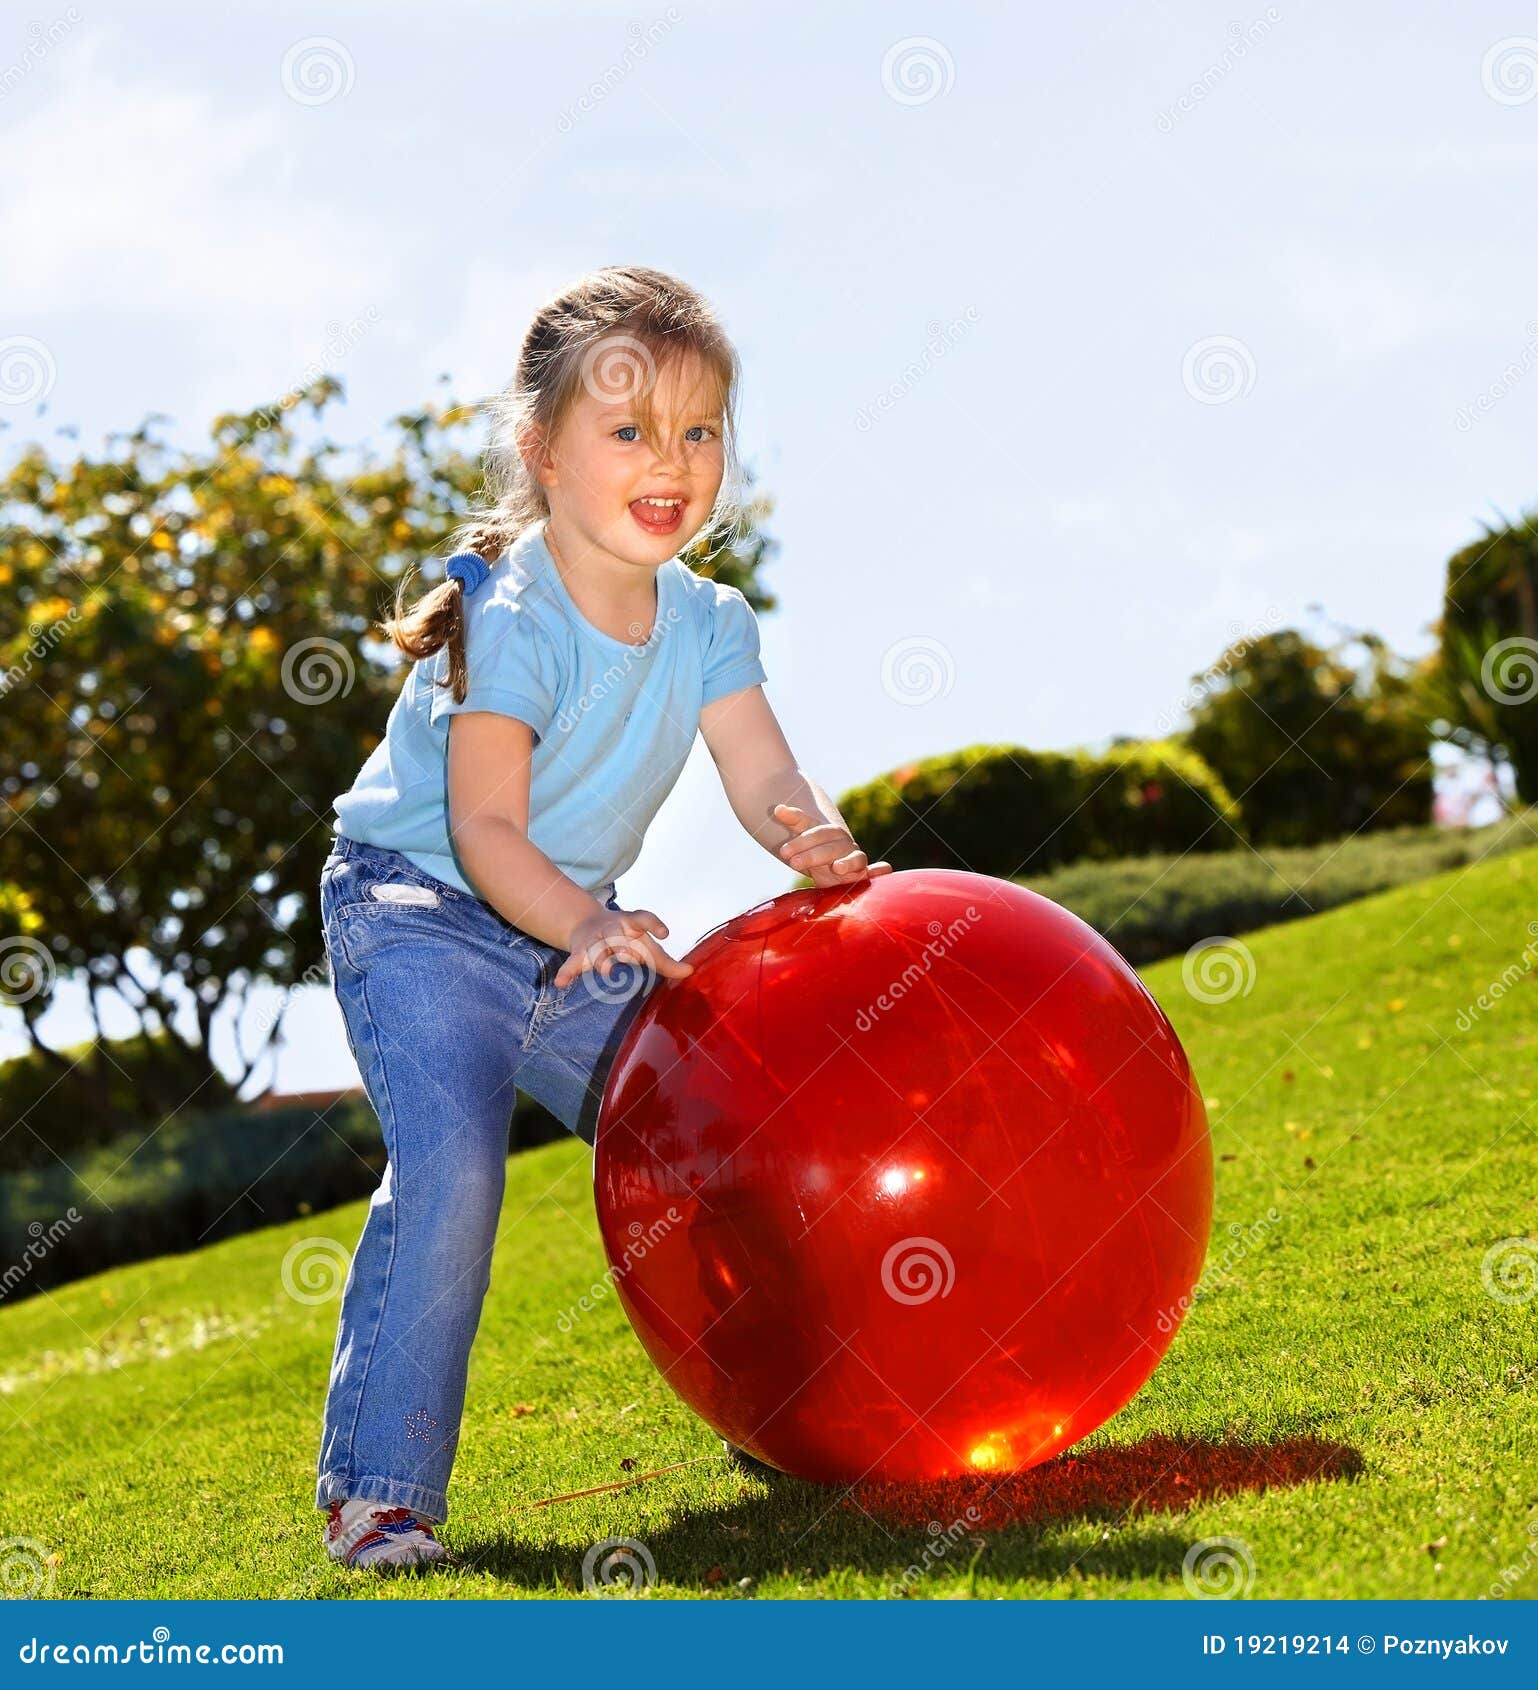 Мальчик с большим шаром. Девочка с красным мячом. Девочка с мячиком. Ребенок с большим мячом. Фотосессия детей с большим мячом.